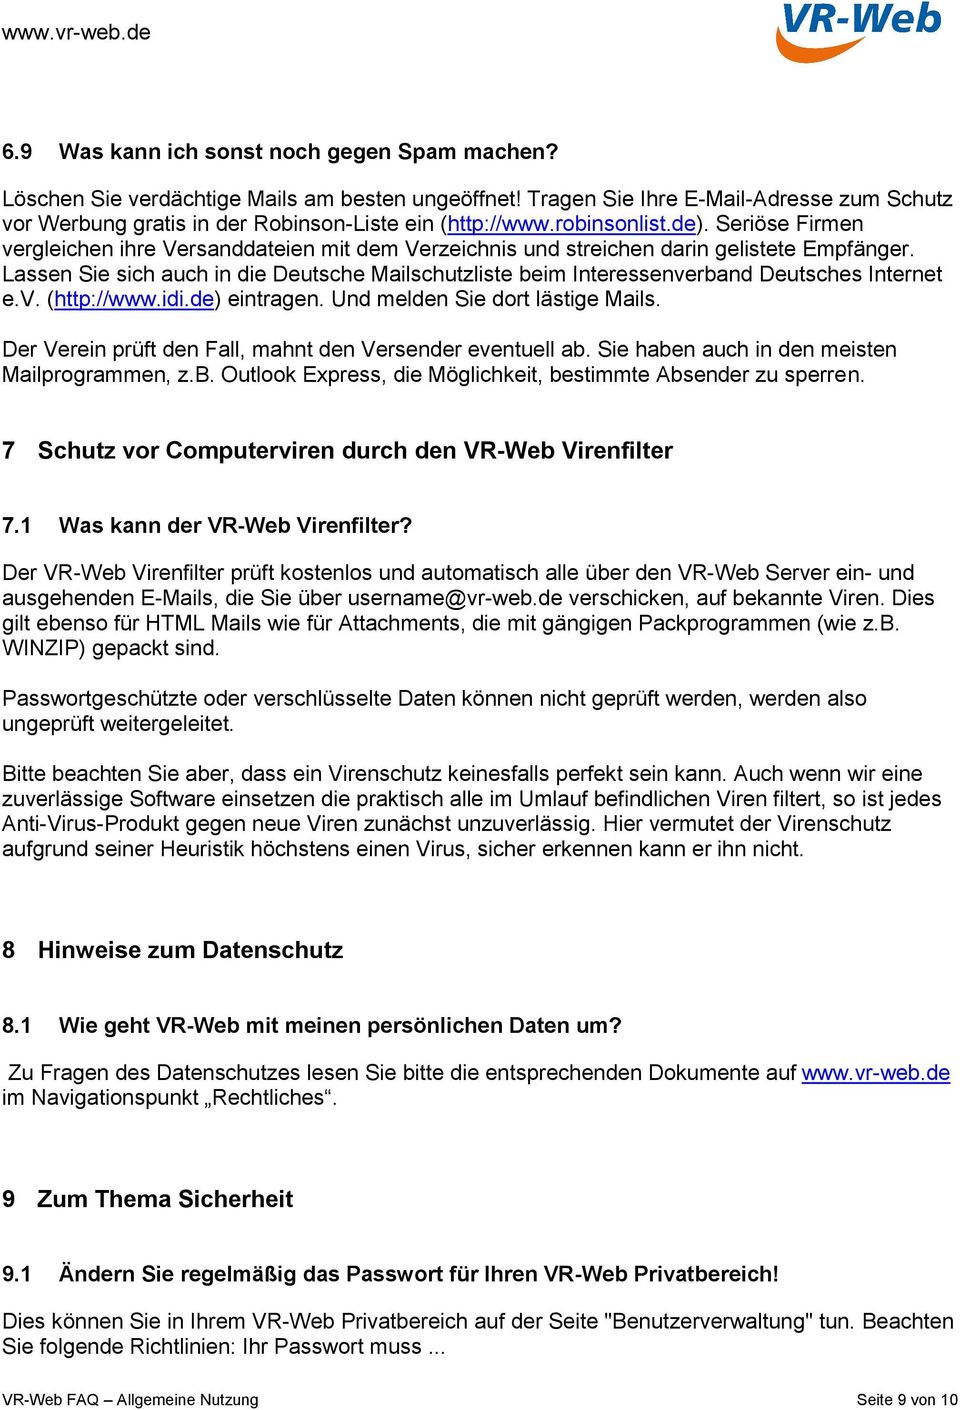 Lassen Sie sich auch in die Deutsche Mailschutzliste beim Interessenverband Deutsches Internet e.v. (http://www.idi.de) eintragen. Und melden Sie dort lästige Mails.